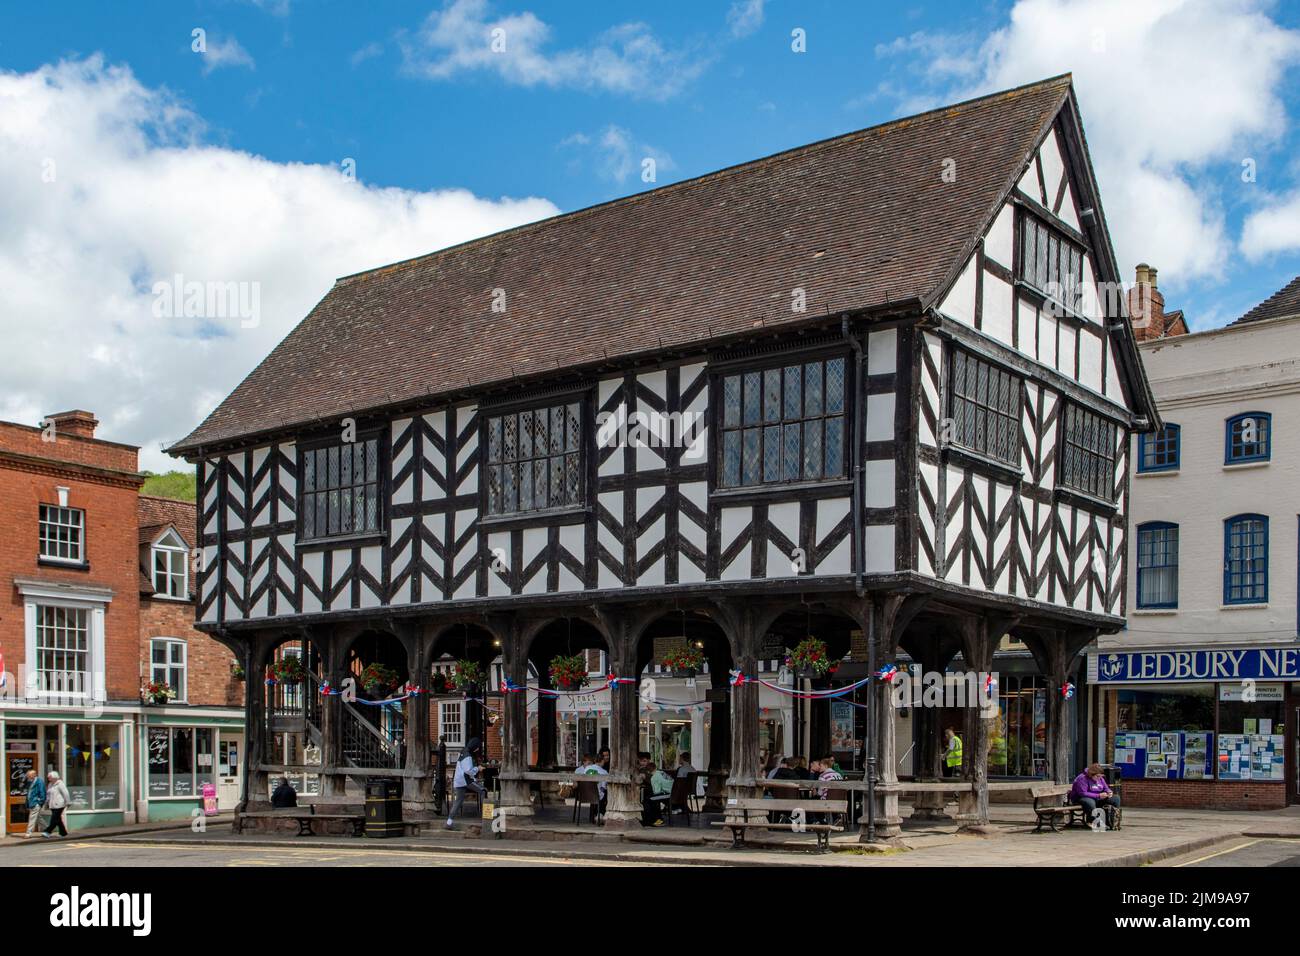 Tudor Half-timbered Corn Market House, Ledbury, Herefordshire, England Stock Photo